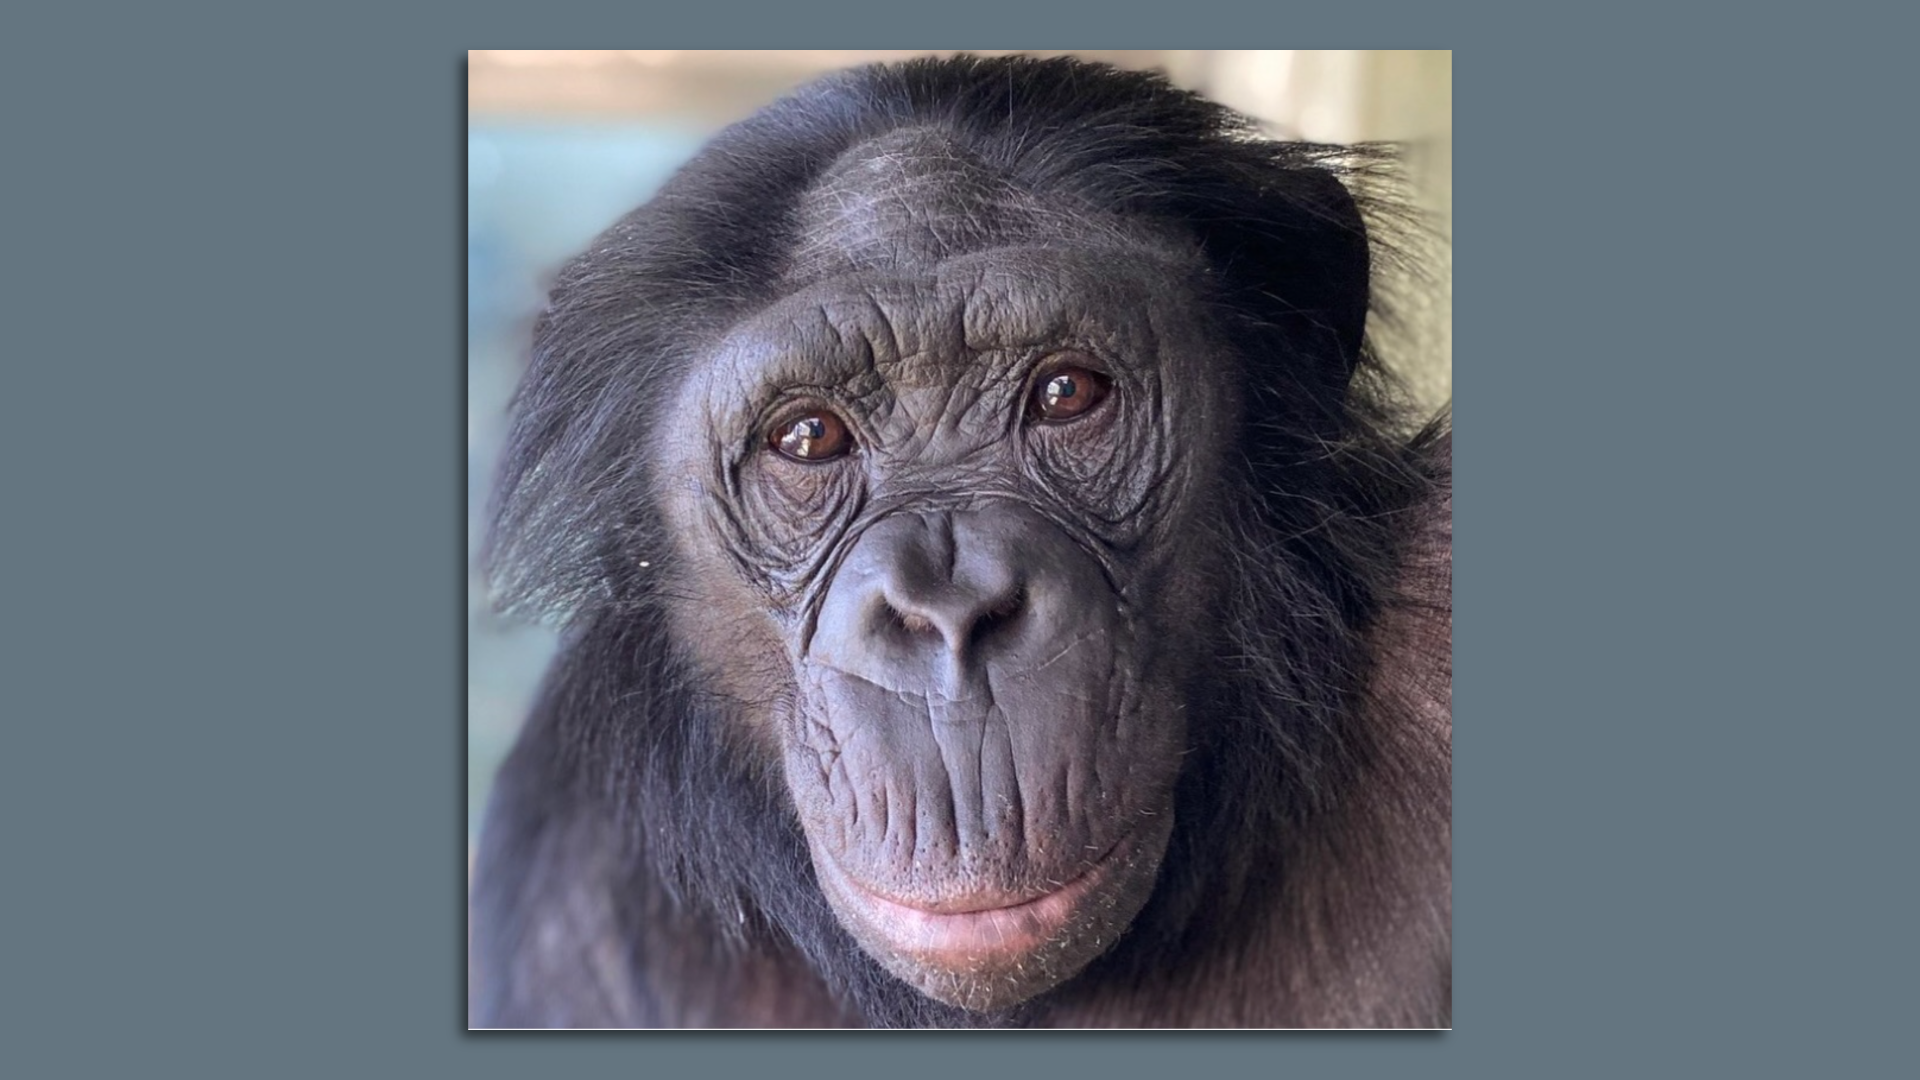 A photo of an ape.